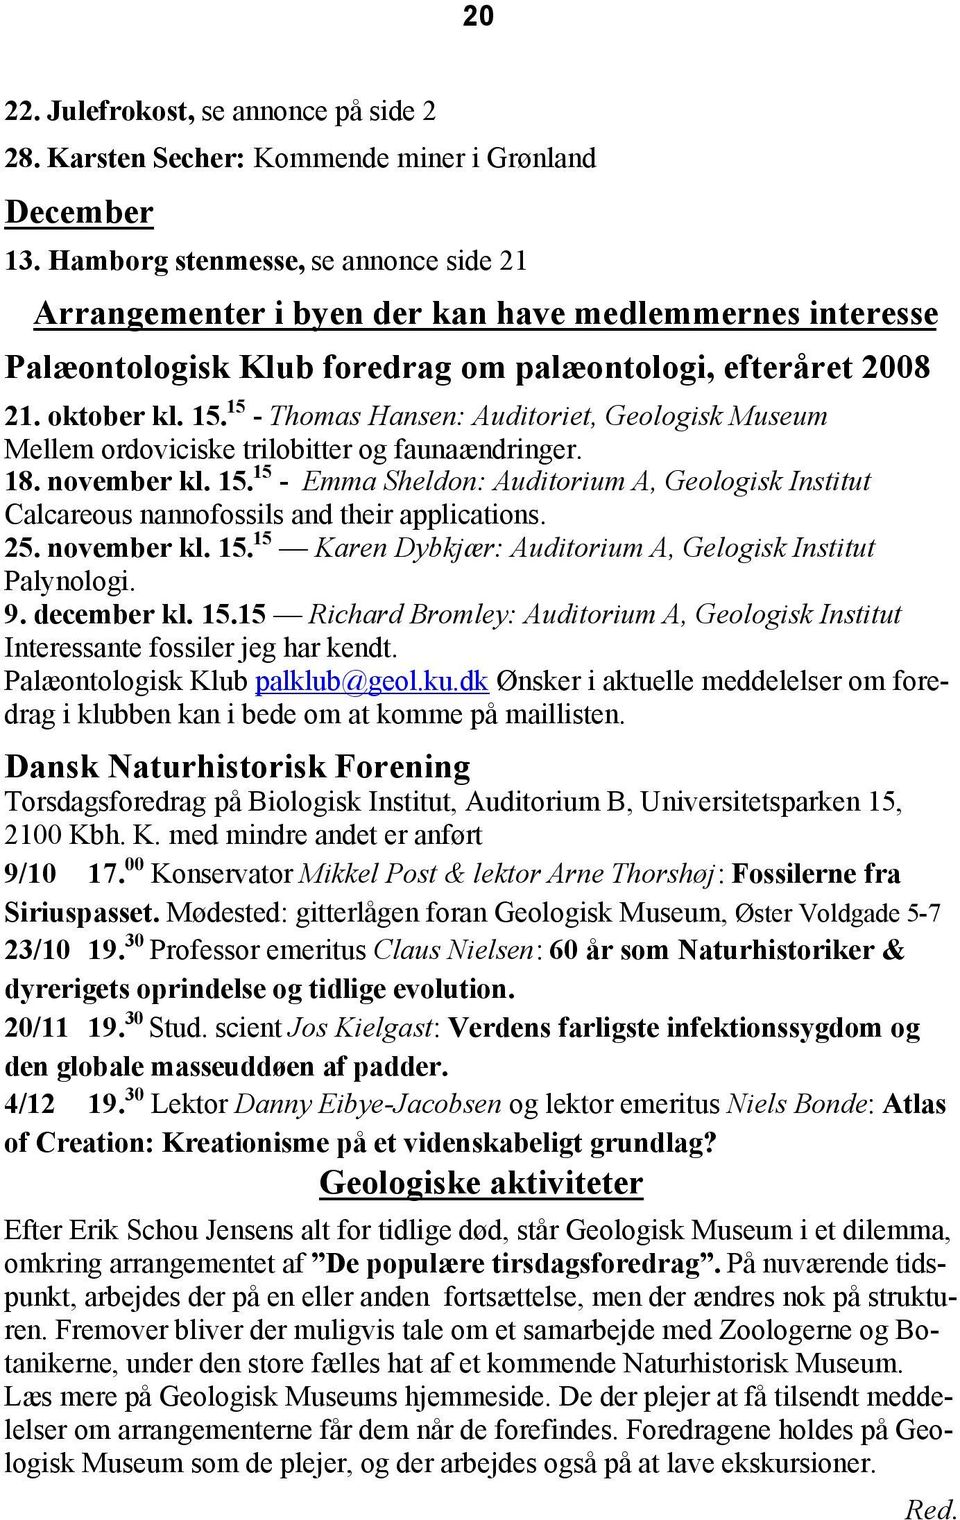 15 - Thomas Hansen: Auditoriet, Geologisk Museum Mellem ordoviciske trilobitter og faunaændringer. 18. november kl. 15.